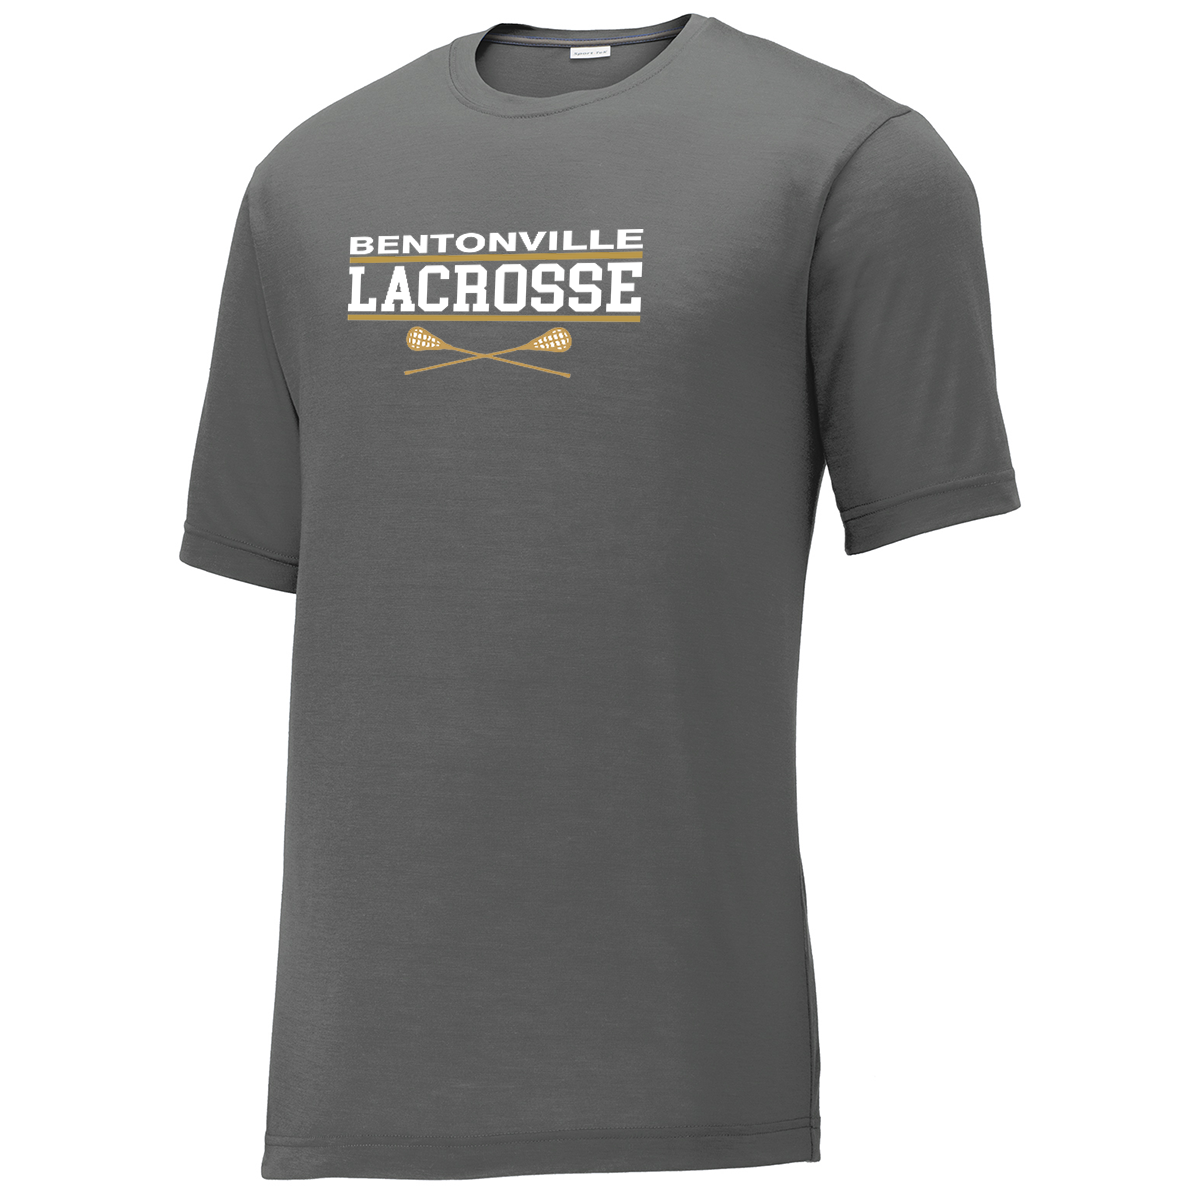 Bentonville Lacrosse CottonTouch Performance T-Shirt